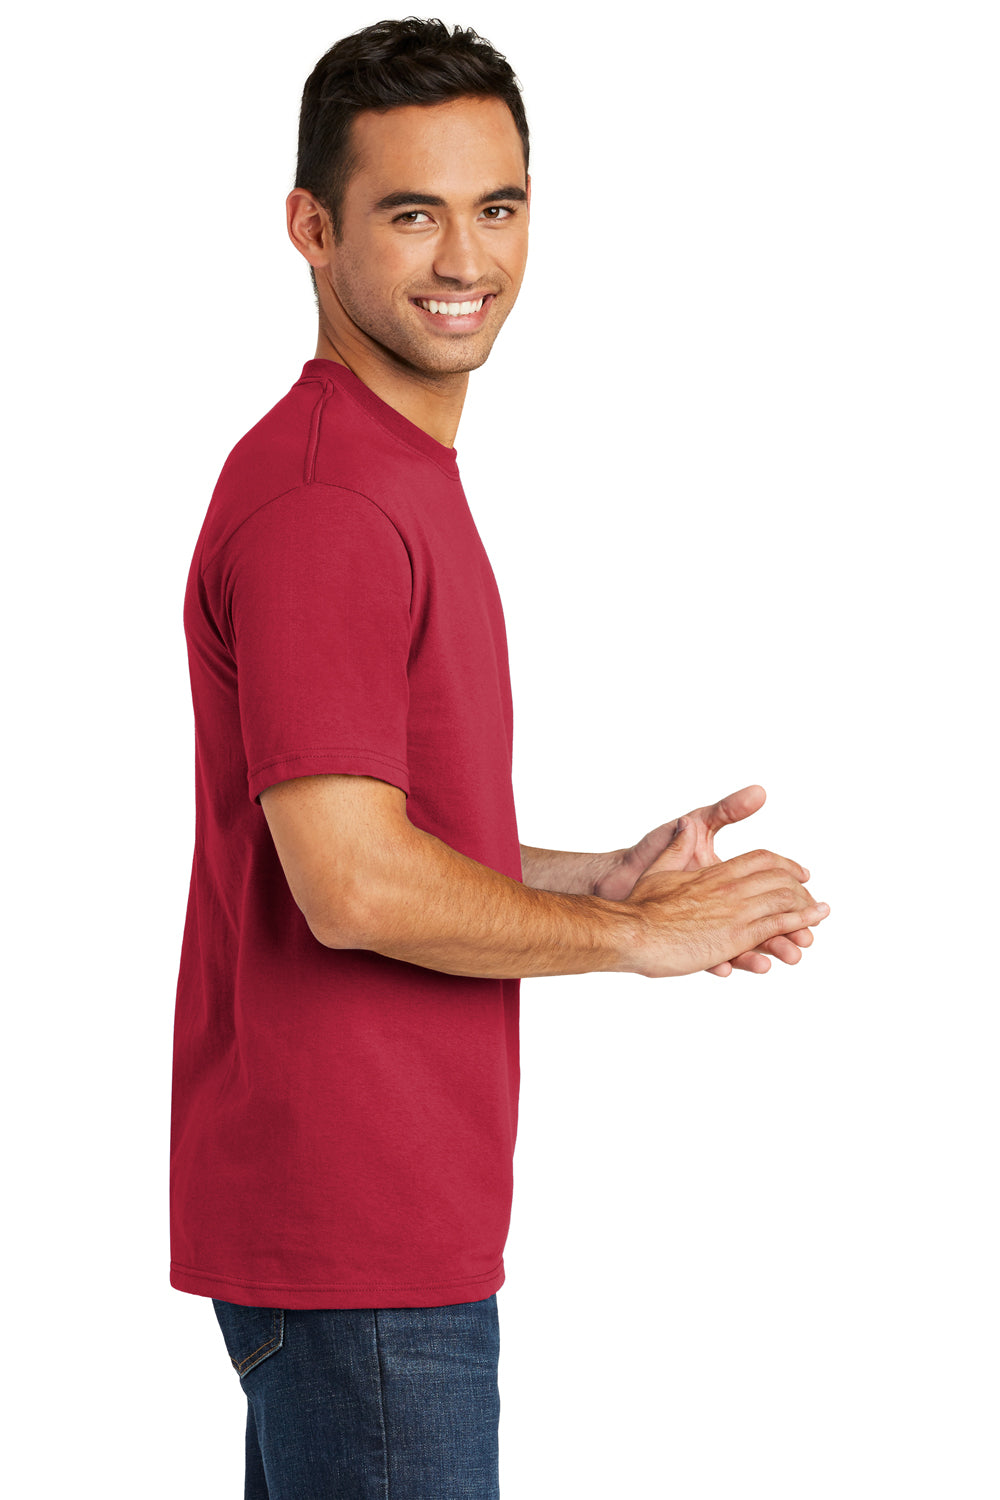 Port & Company USA100 Mens USA Made Short Sleeve Crewneck T-Shirt Red Side